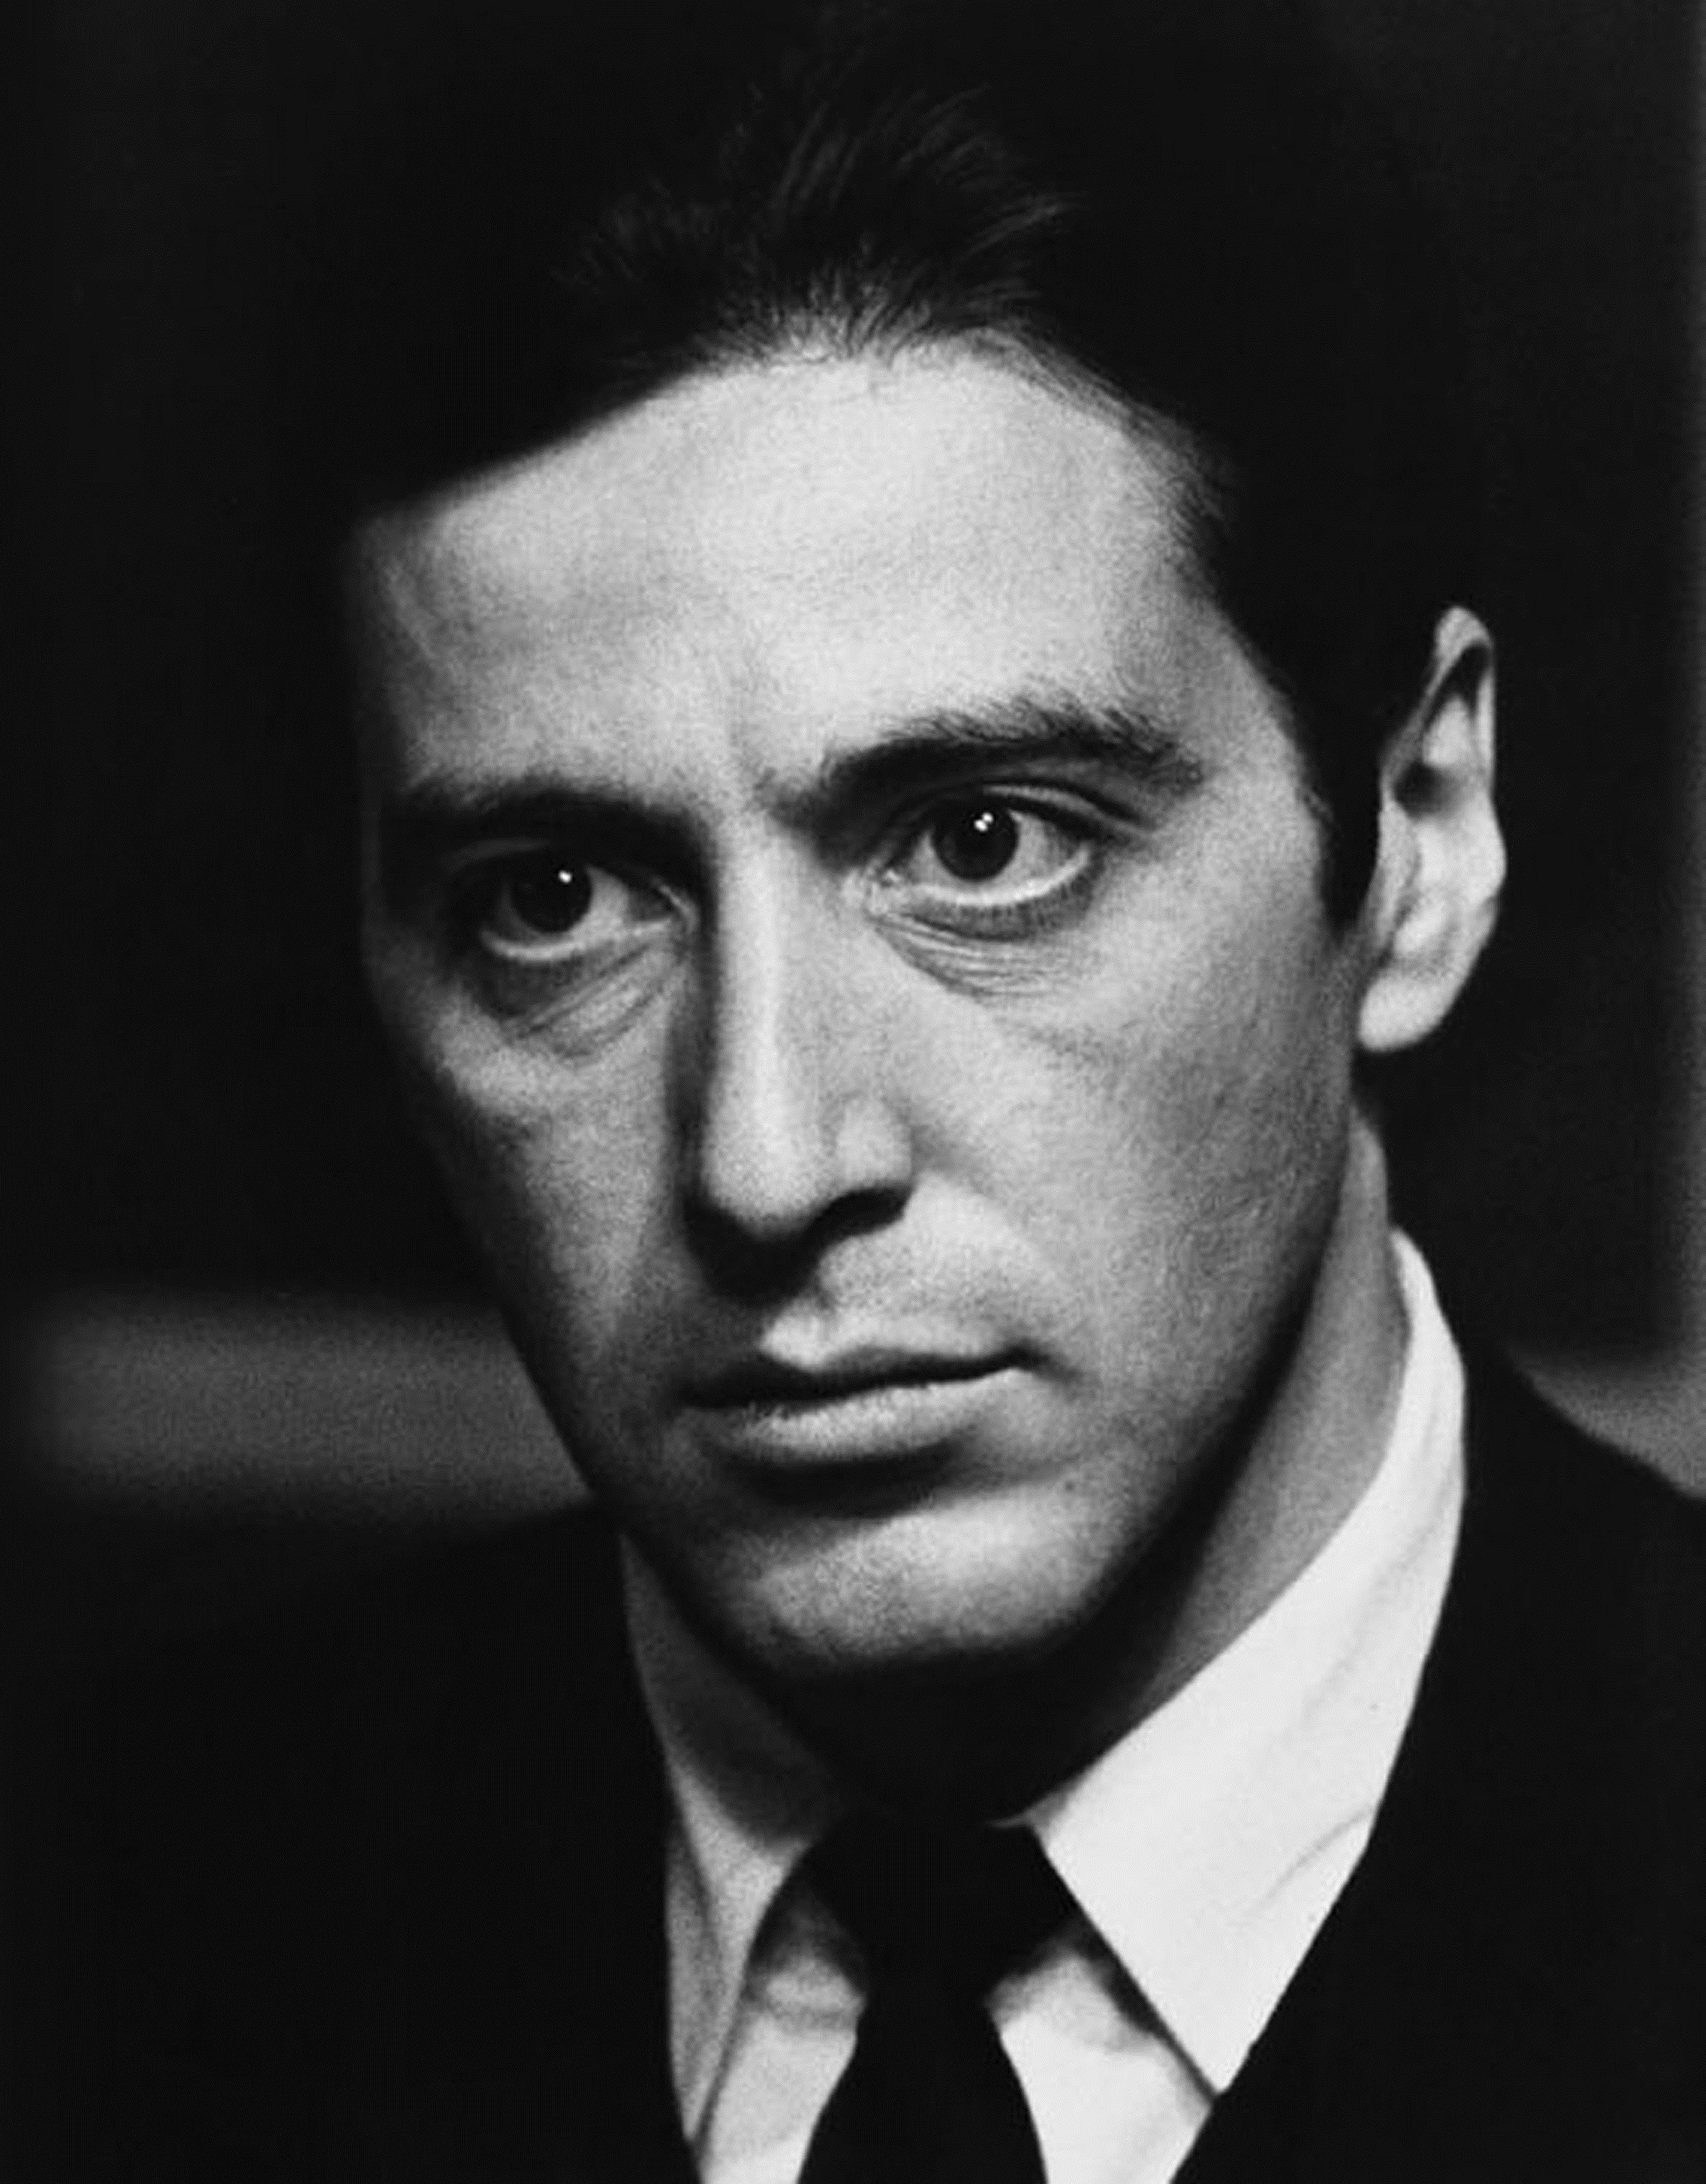 Al Pacino Michael Corleone The Godfather Monochrome 2361x3023